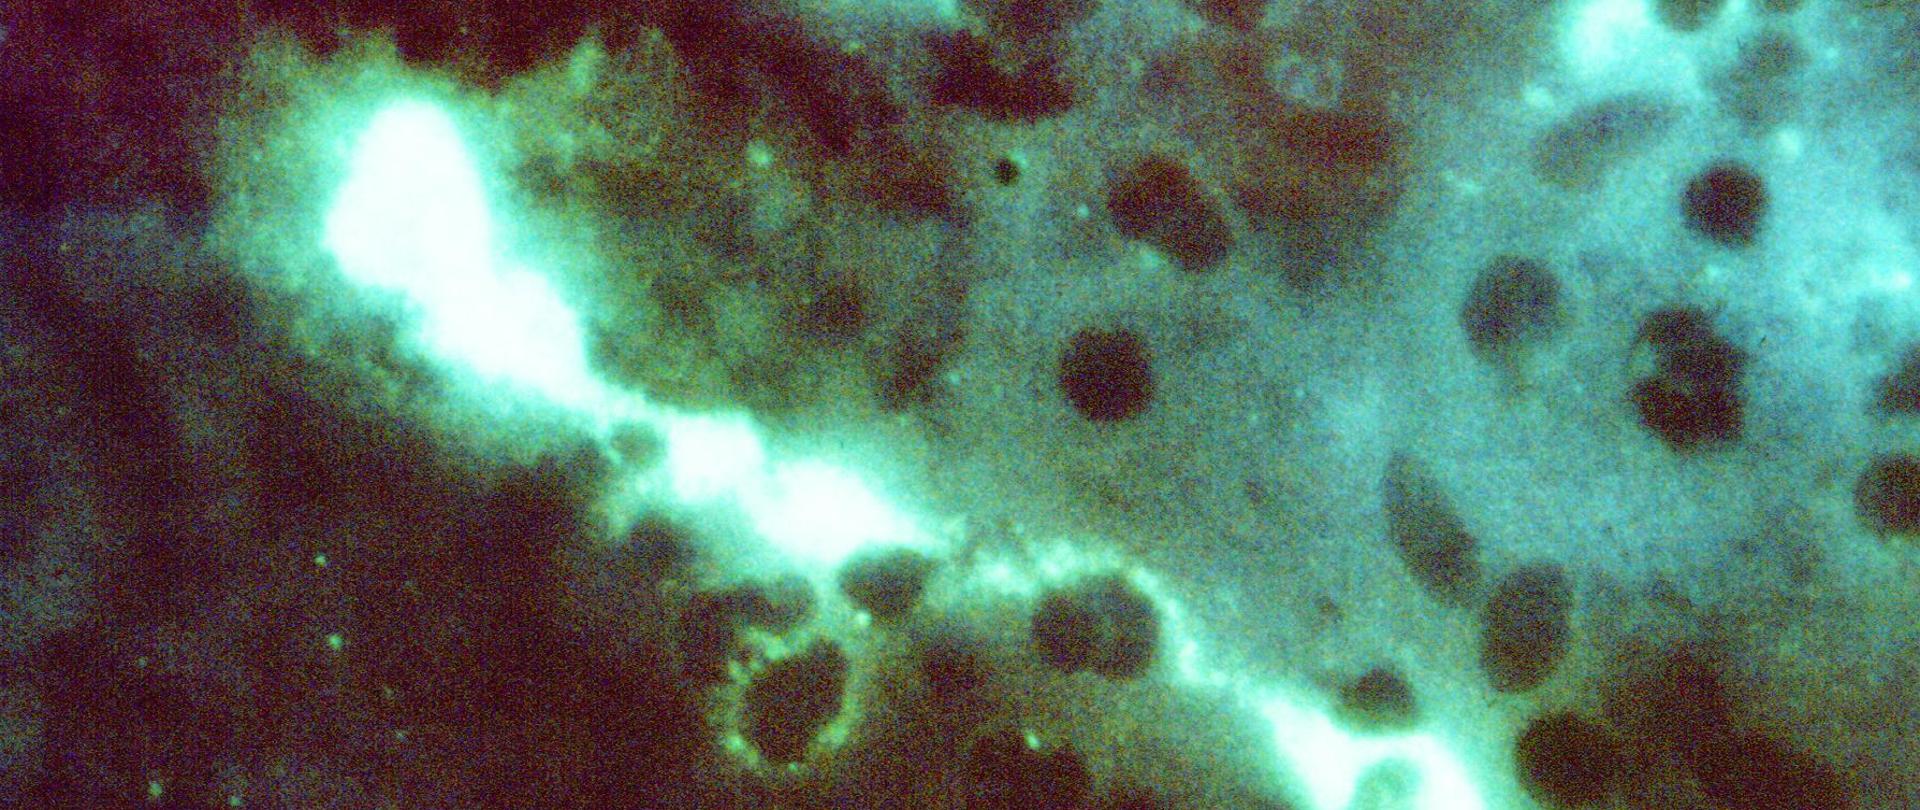 STDs  066 (not an STD although chlamydia is in the name)
Chlamydia Psittaci - Photomic
Direct FA stained mouse brain impressions showing positive staining for Chlamydia psittaci: 400X.
10/71
Lab/Virol., Dr. Vester Lewis
Additional:
Box 1.7, P72-222
Psittacosis is a bacterial infection of humans that can cause severe pneumonia and other serious health problems. From 1988 through 2000, 879 human cases of psittacosis were reported to CDC, and most resulted from exposure to infected pet birds.
Animal Diseases; Bacterial, Rickettsial, Chlamydial, and Mycoplasmal Diseases
